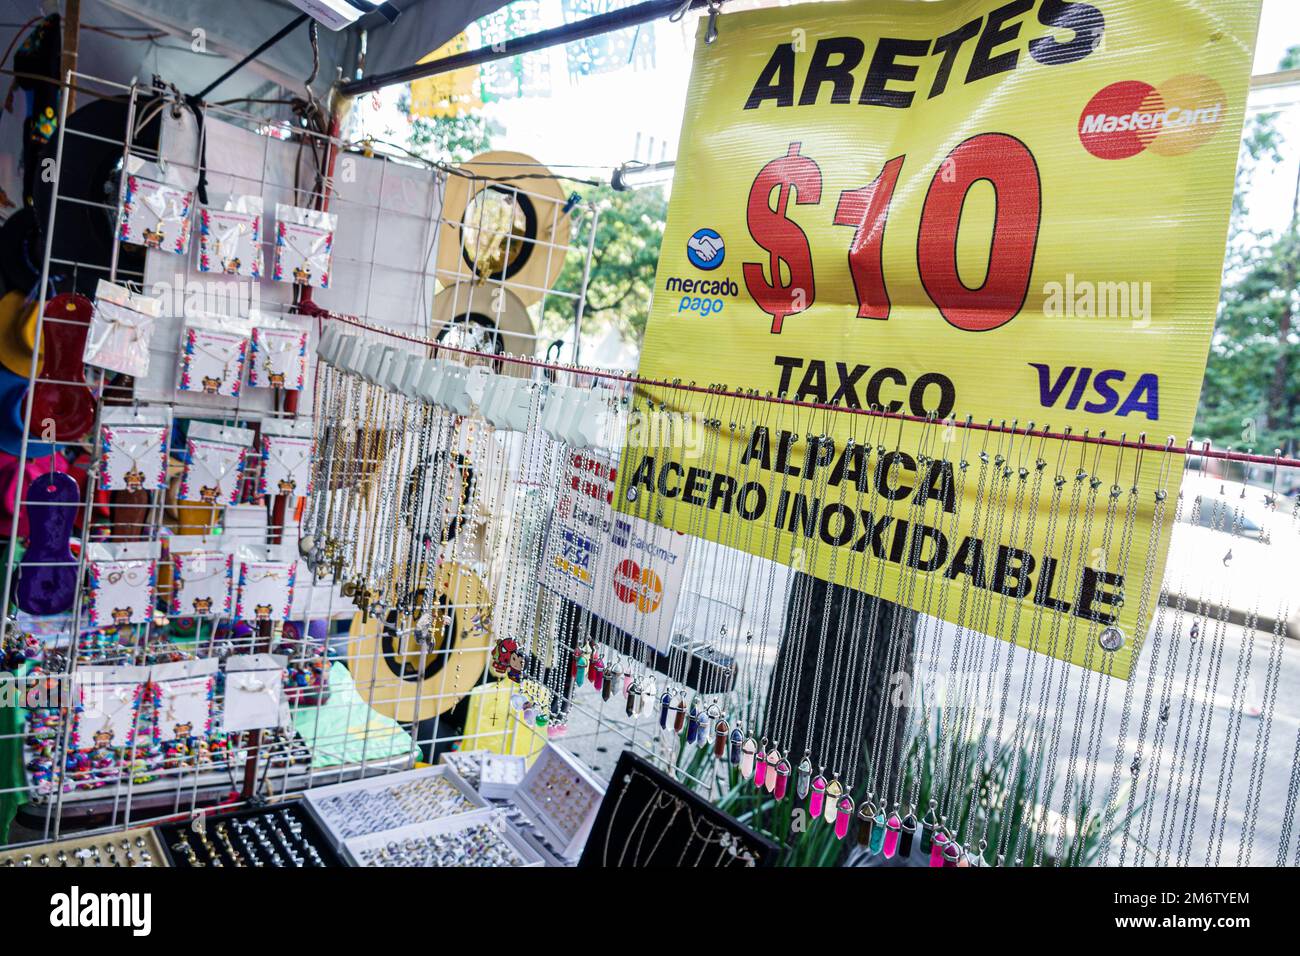 Mexico, Juarez Cuauhtemoc Avenida Paseo de la Reforma, Noël marché artisanal mercado artesanal, bijoux, artisanat exposition vente, vendeur Banque D'Images